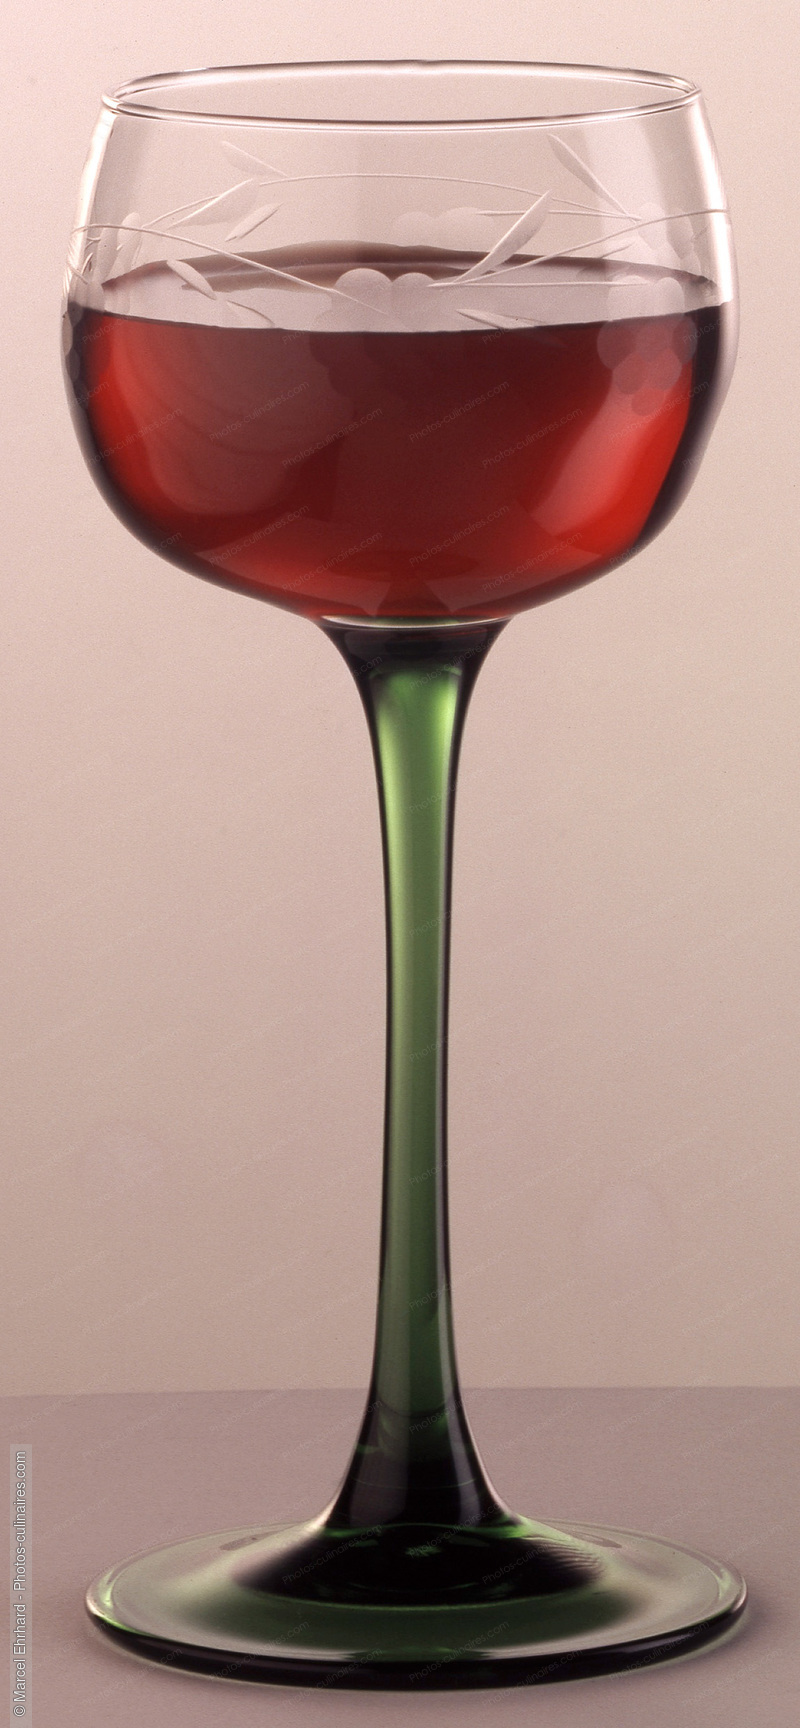 Verre de vin rosé - photo référence BO31.jpg